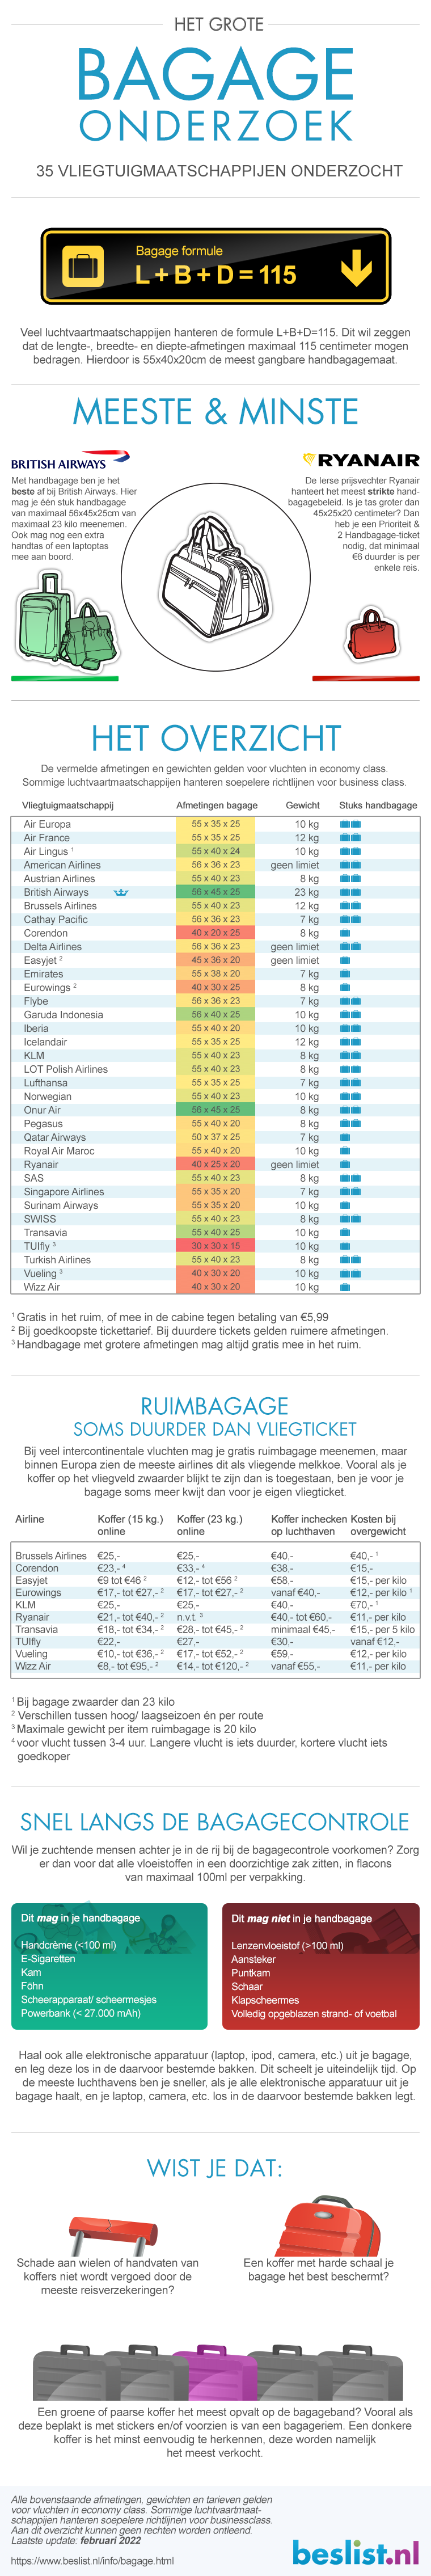 houder badminton Kwalificatie Afmetingen handbagage koffers | Gewicht & formaat per vliegmaatschappij -  beslist.nl